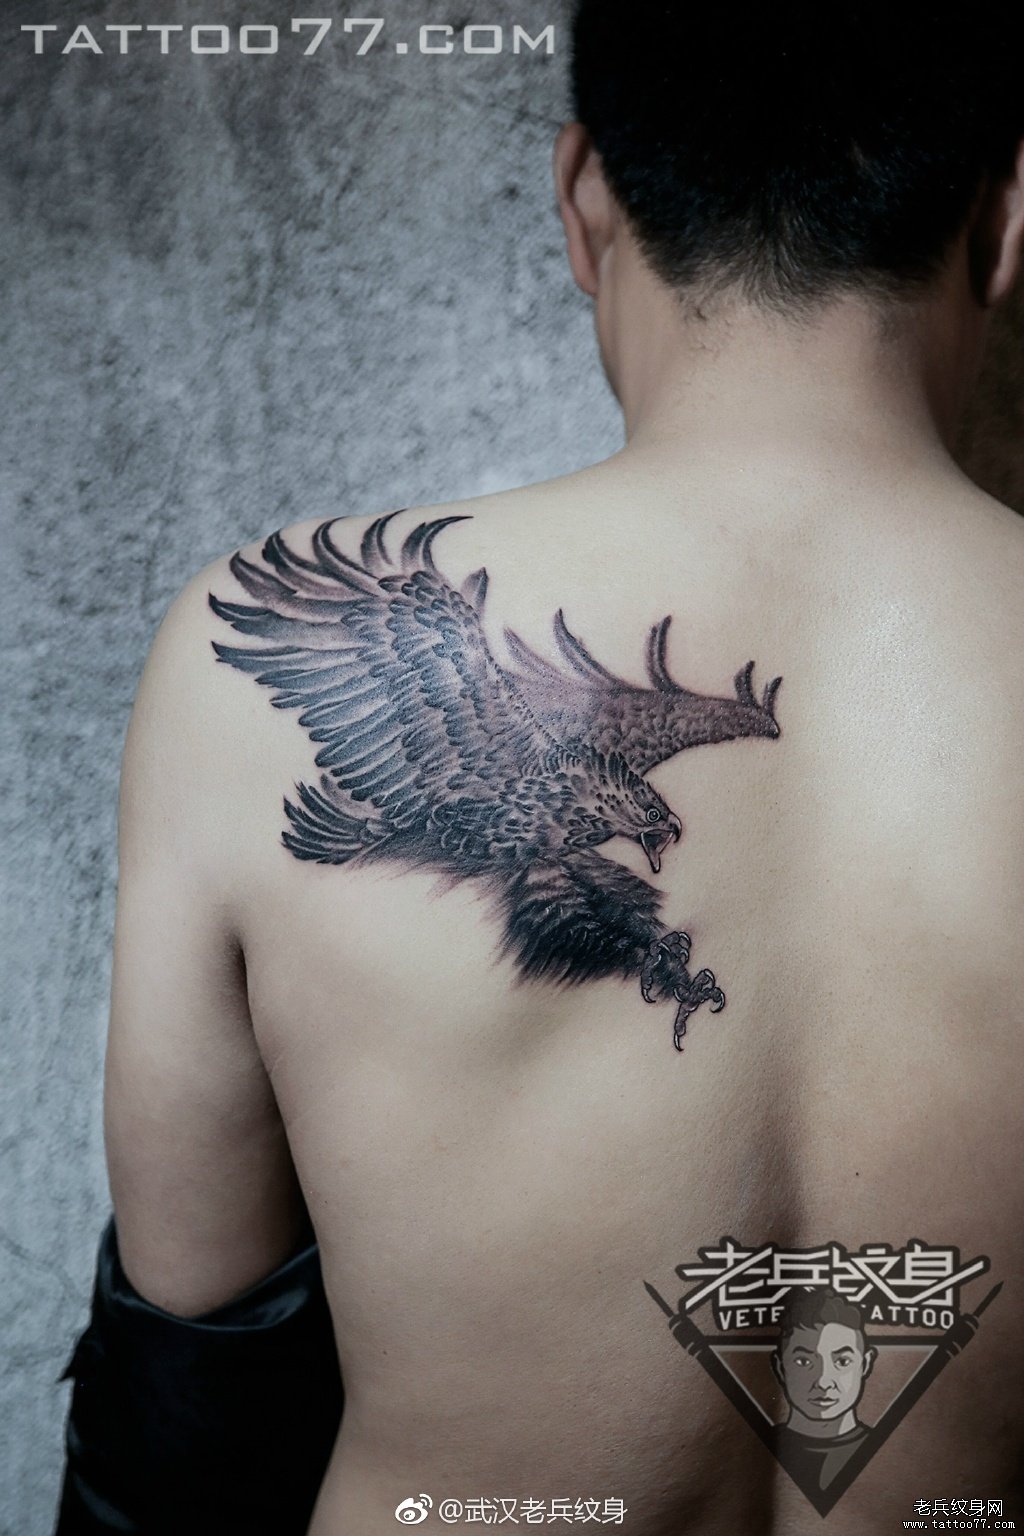 武汉专业纹身店打造的肩背老鹰纹身图案作品